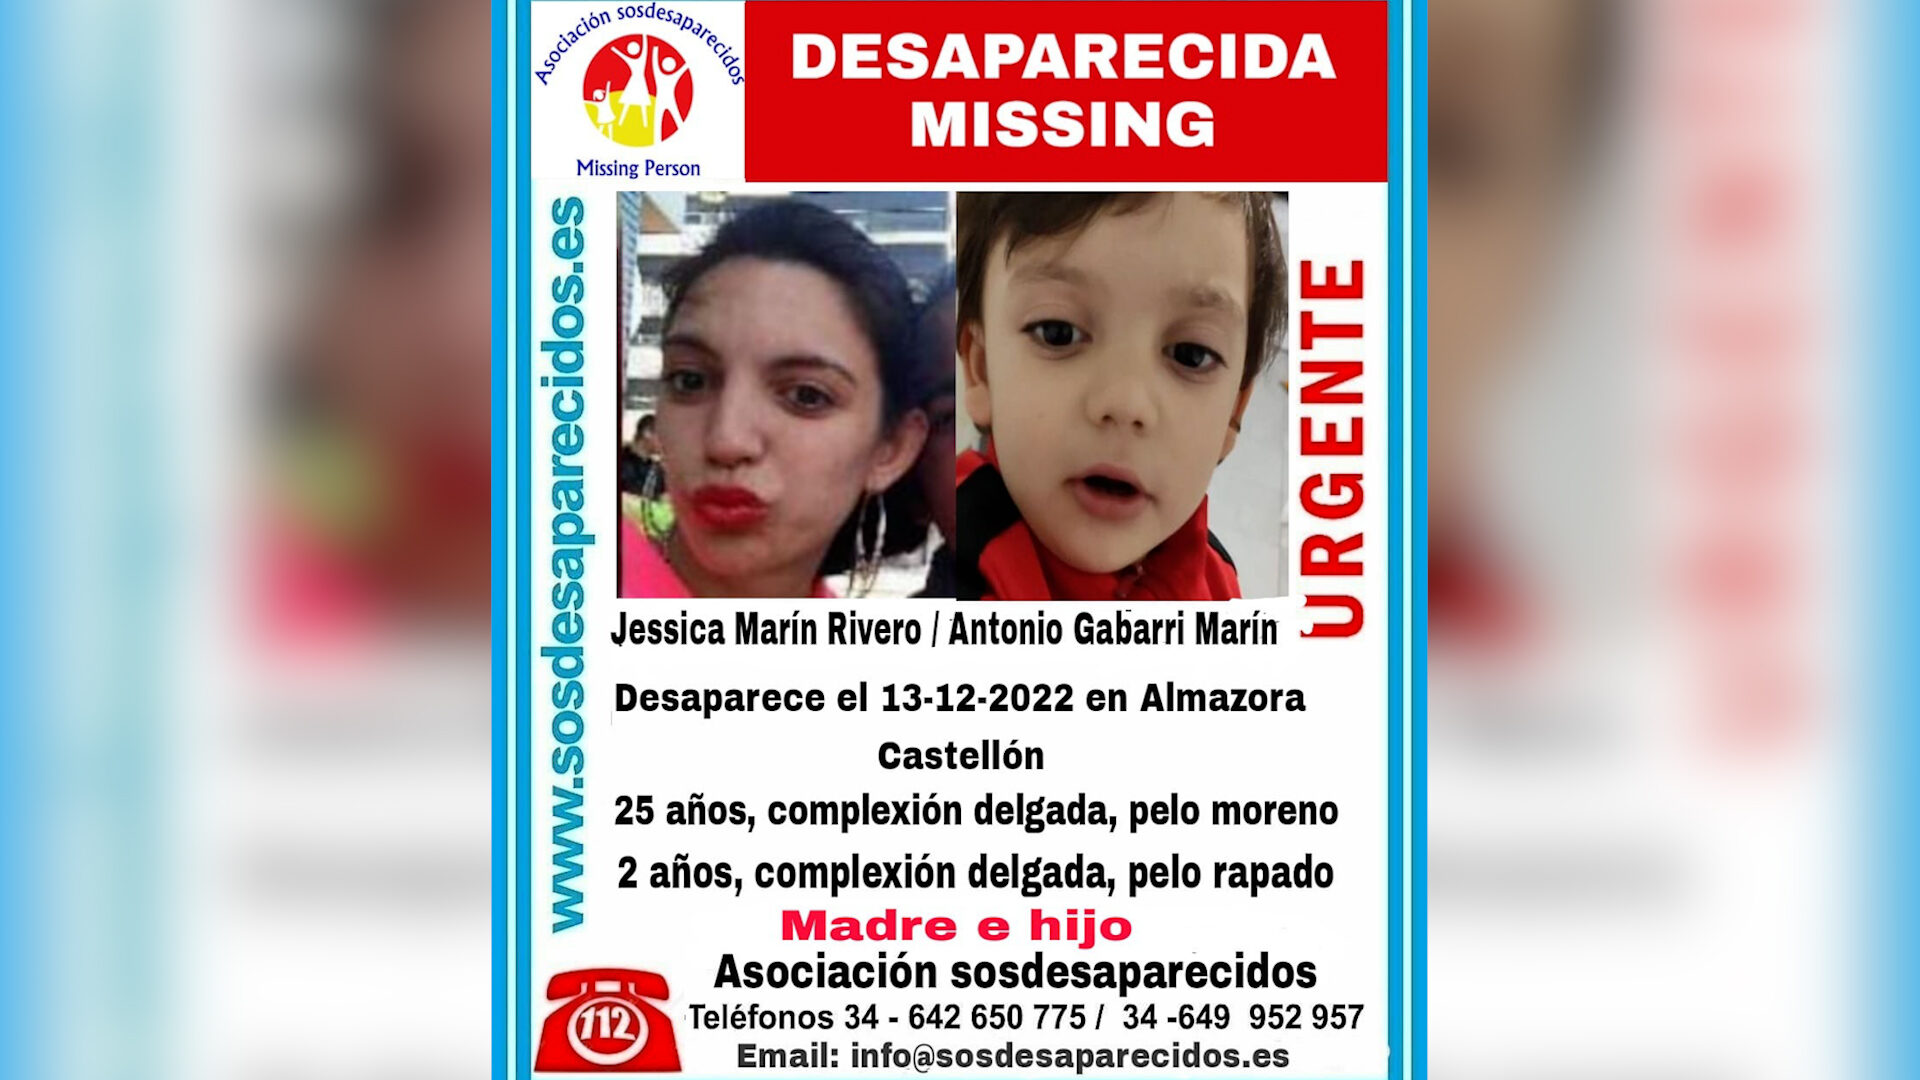 Cartel de desaparecidos de Jessica Marín Rivero y Antonio Gabarri Marín.